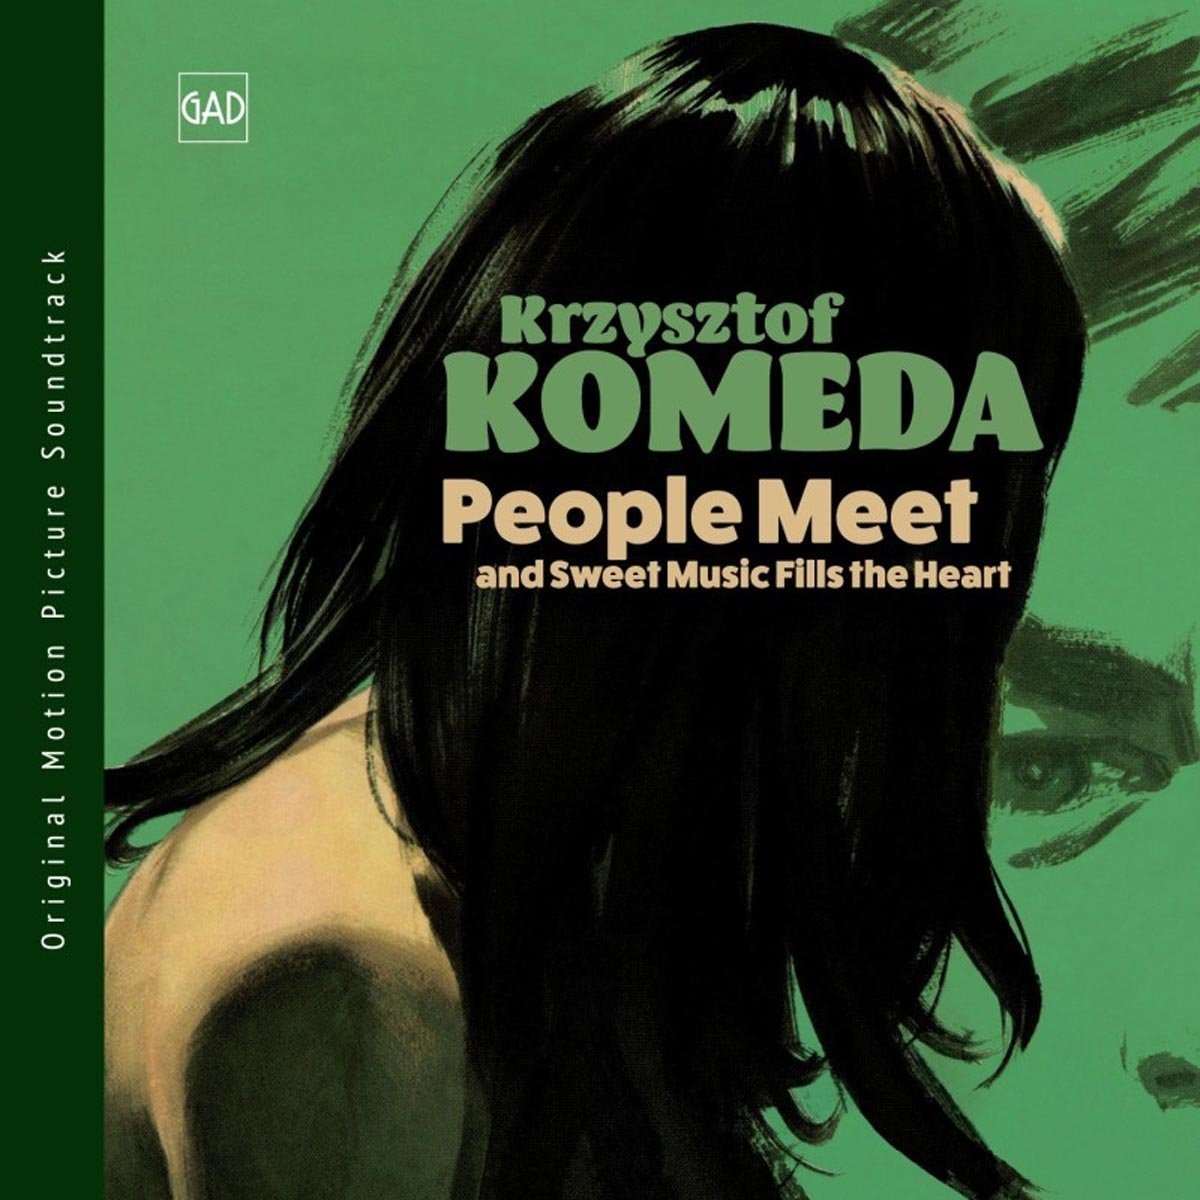 ost 12 17 R Komeda People Meet